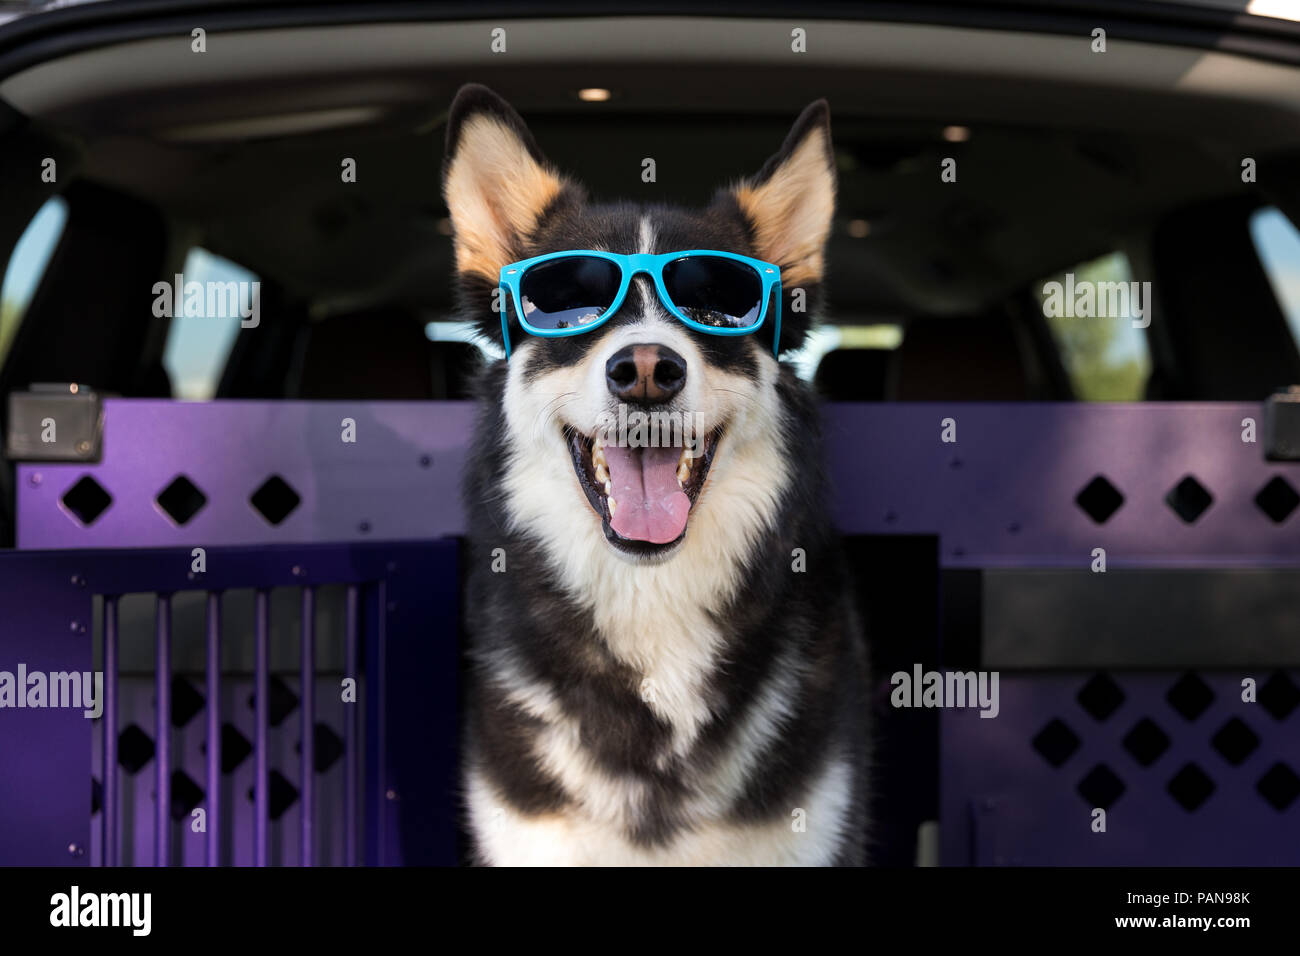 Chien husky portant des lunettes bleu debout dans une caisse à l'intérieur d'un van Banque D'Images